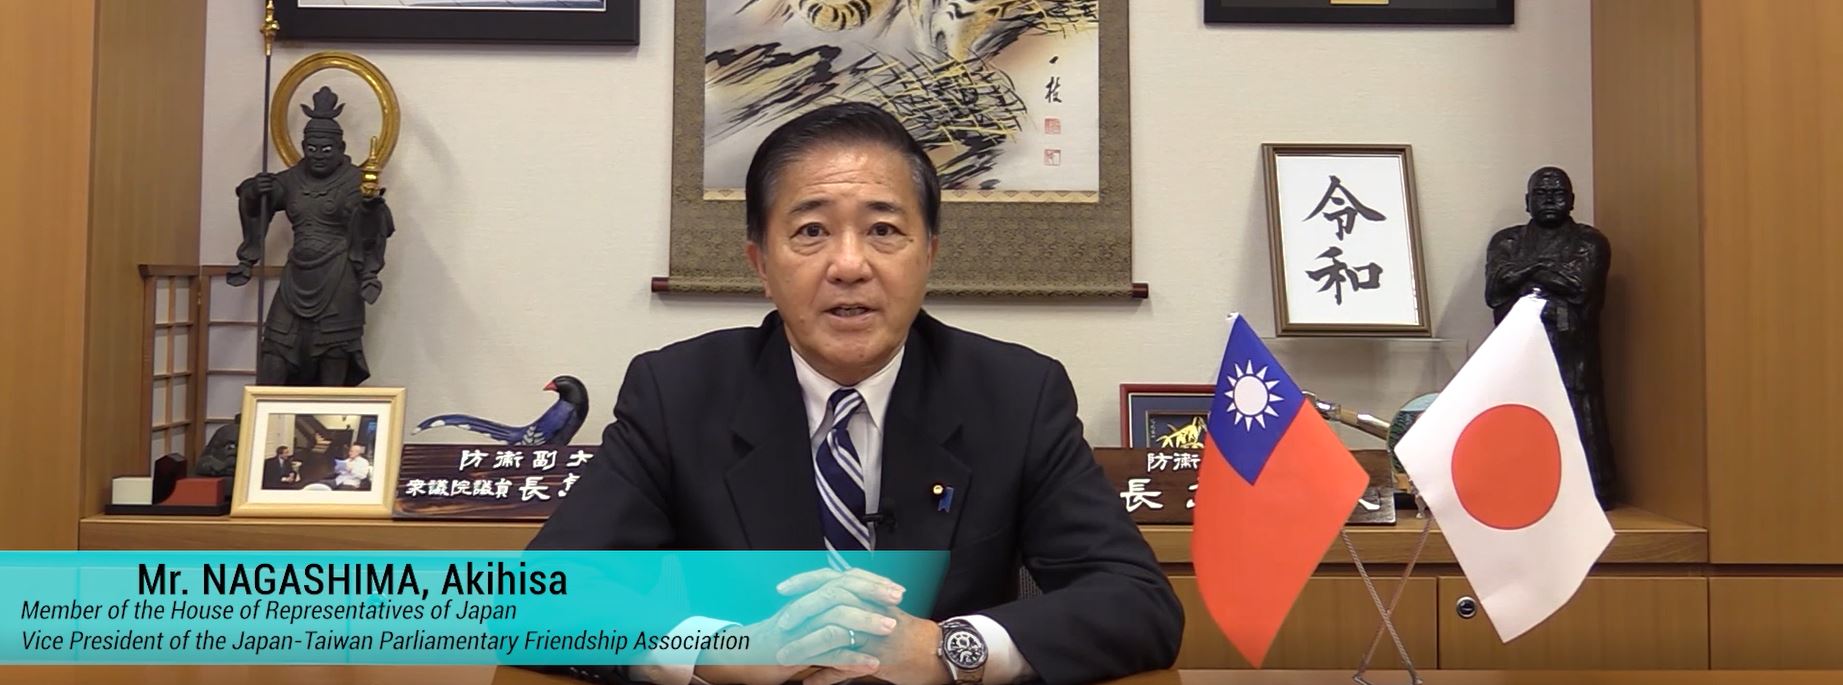 2021玉山論壇 | 致意影片：Mr. NAGASHIMA, Akihisa, Member of the House of Representatives, Japan, and Vice President of the Japan-Taiwan Parliamentary Friendship Association